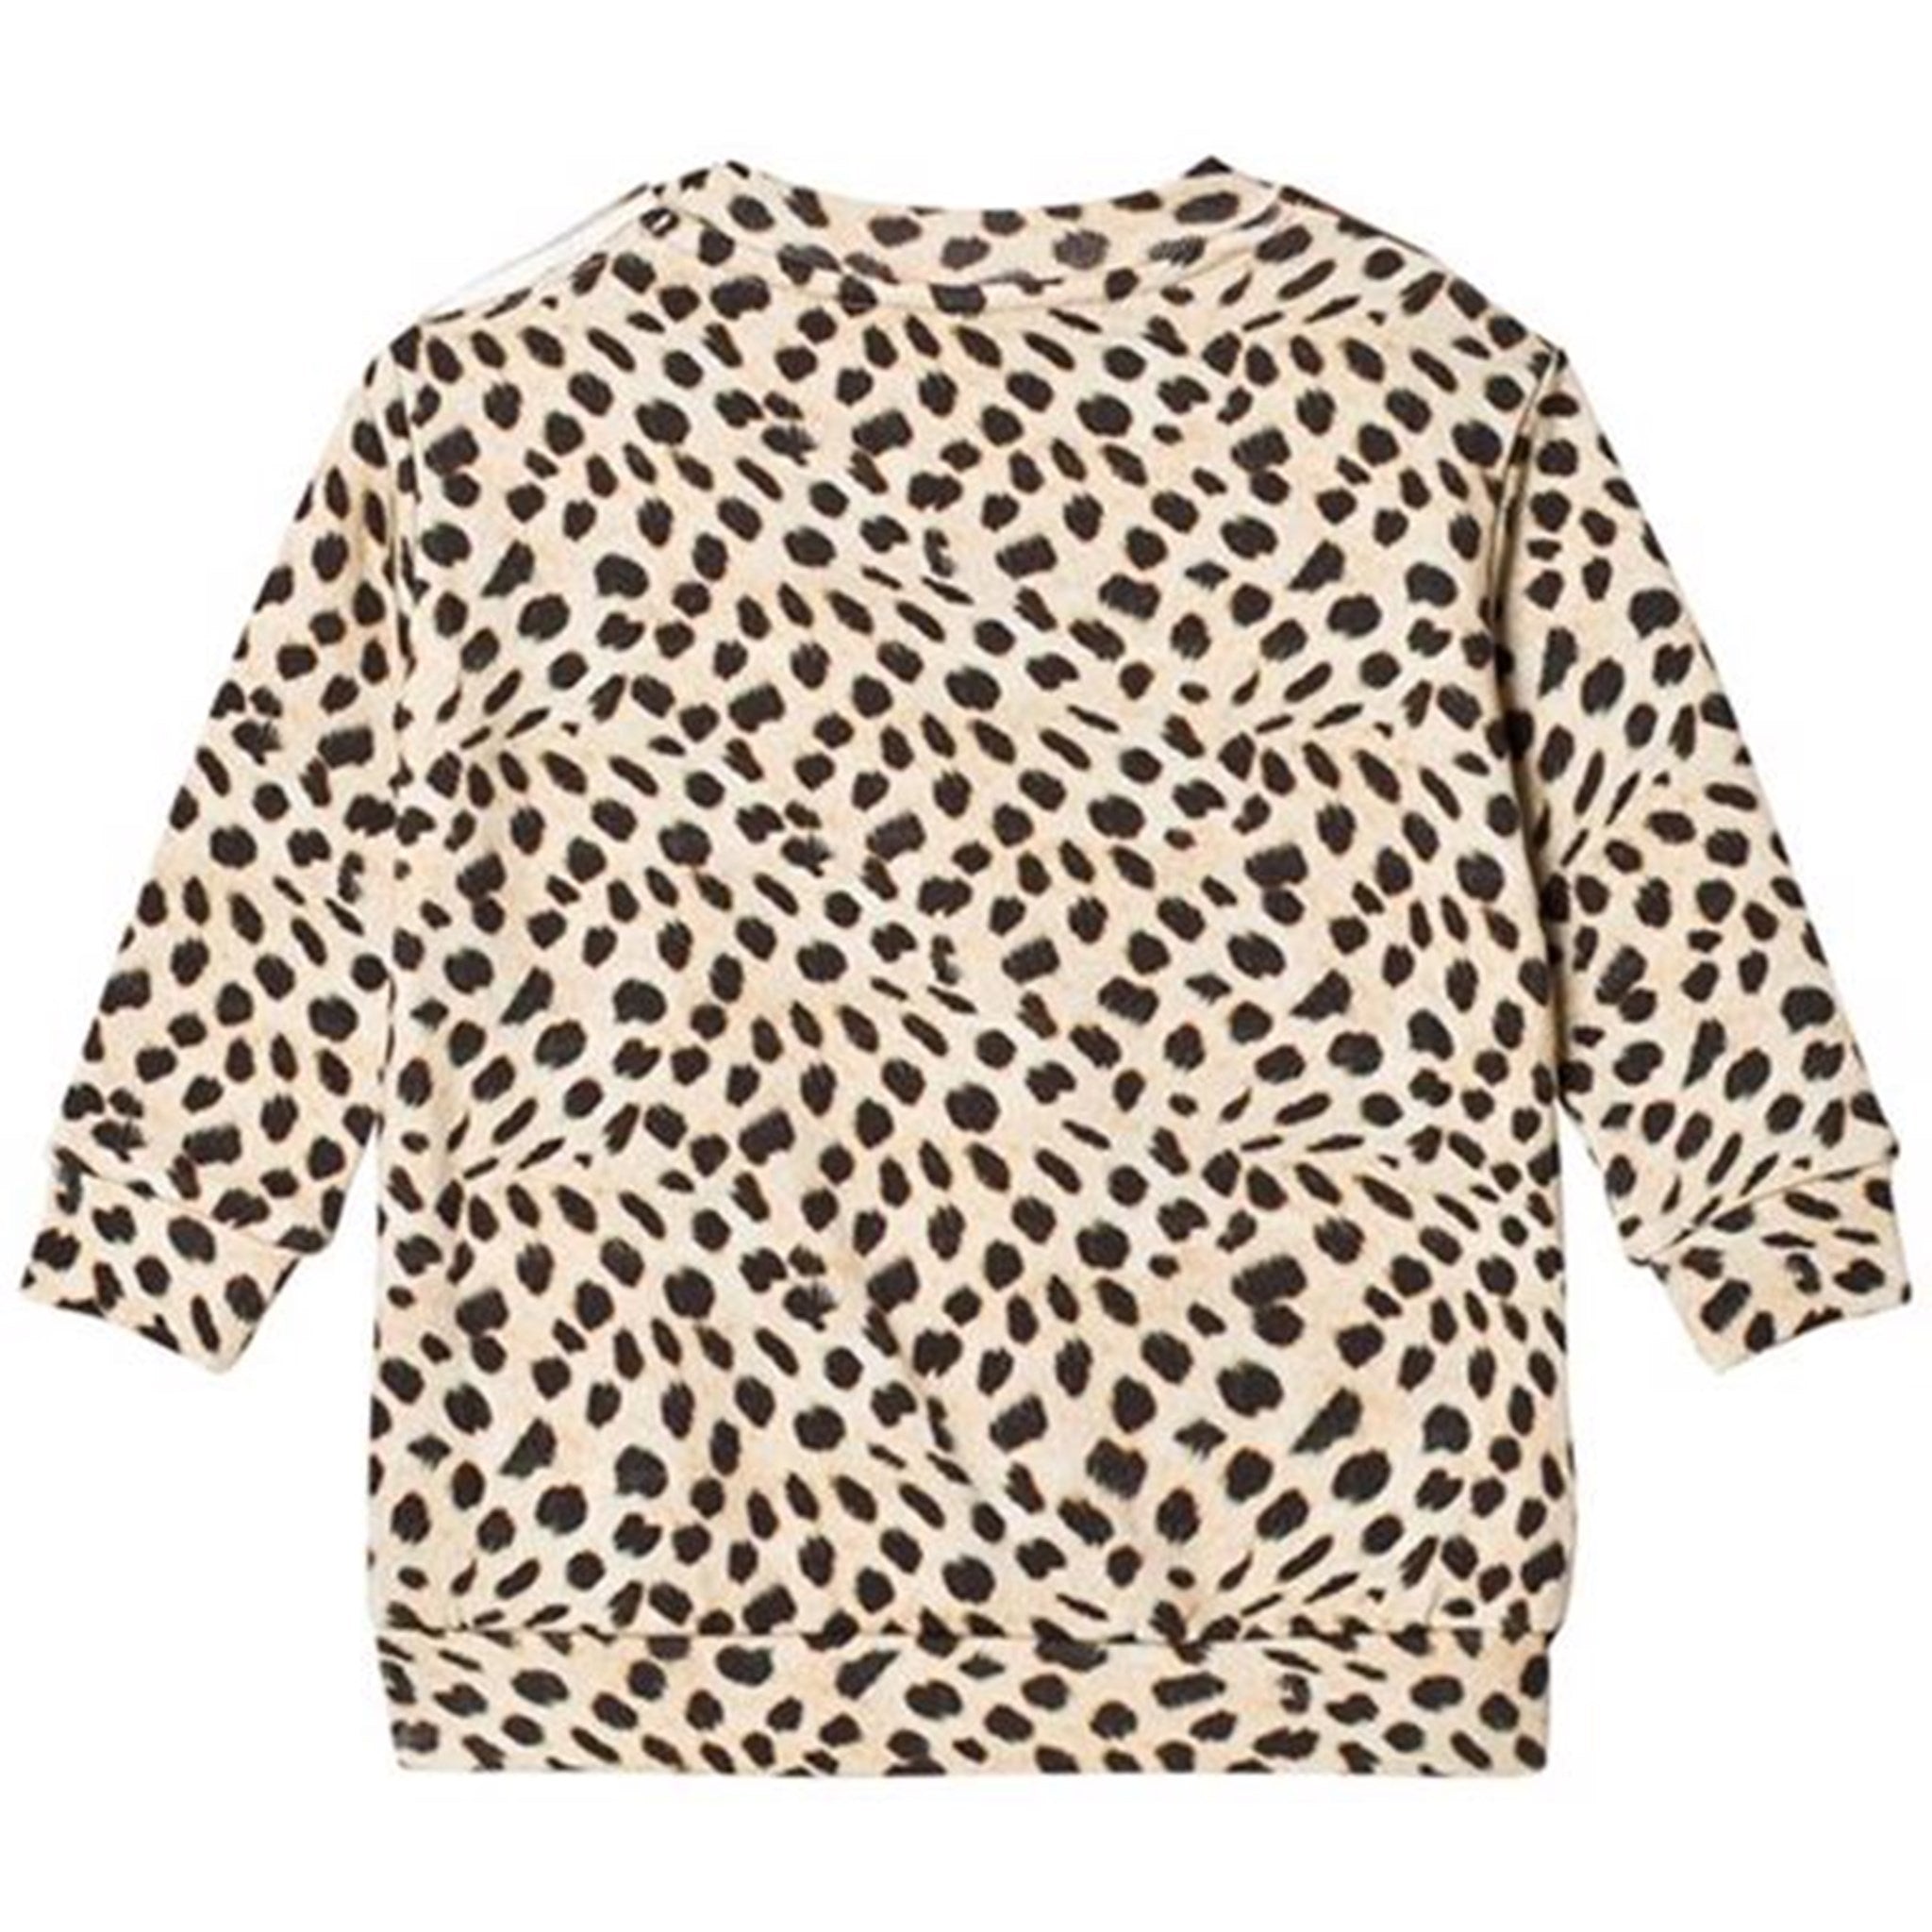 Popupshop Leopard Sweatshirt 2